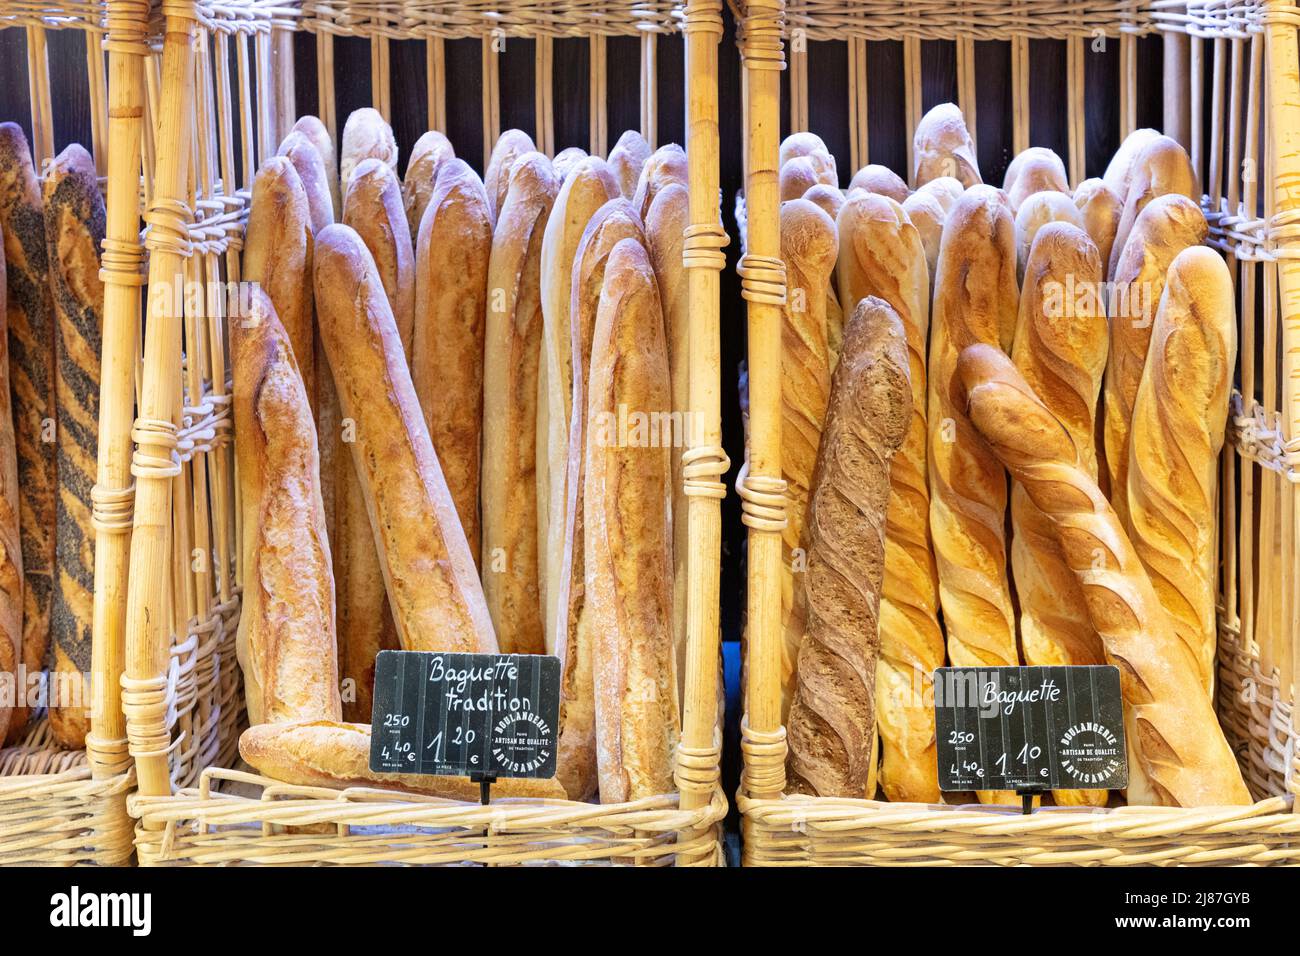 Fresh baguettes for sale at a boulangerie, Paris, France Stock Photo